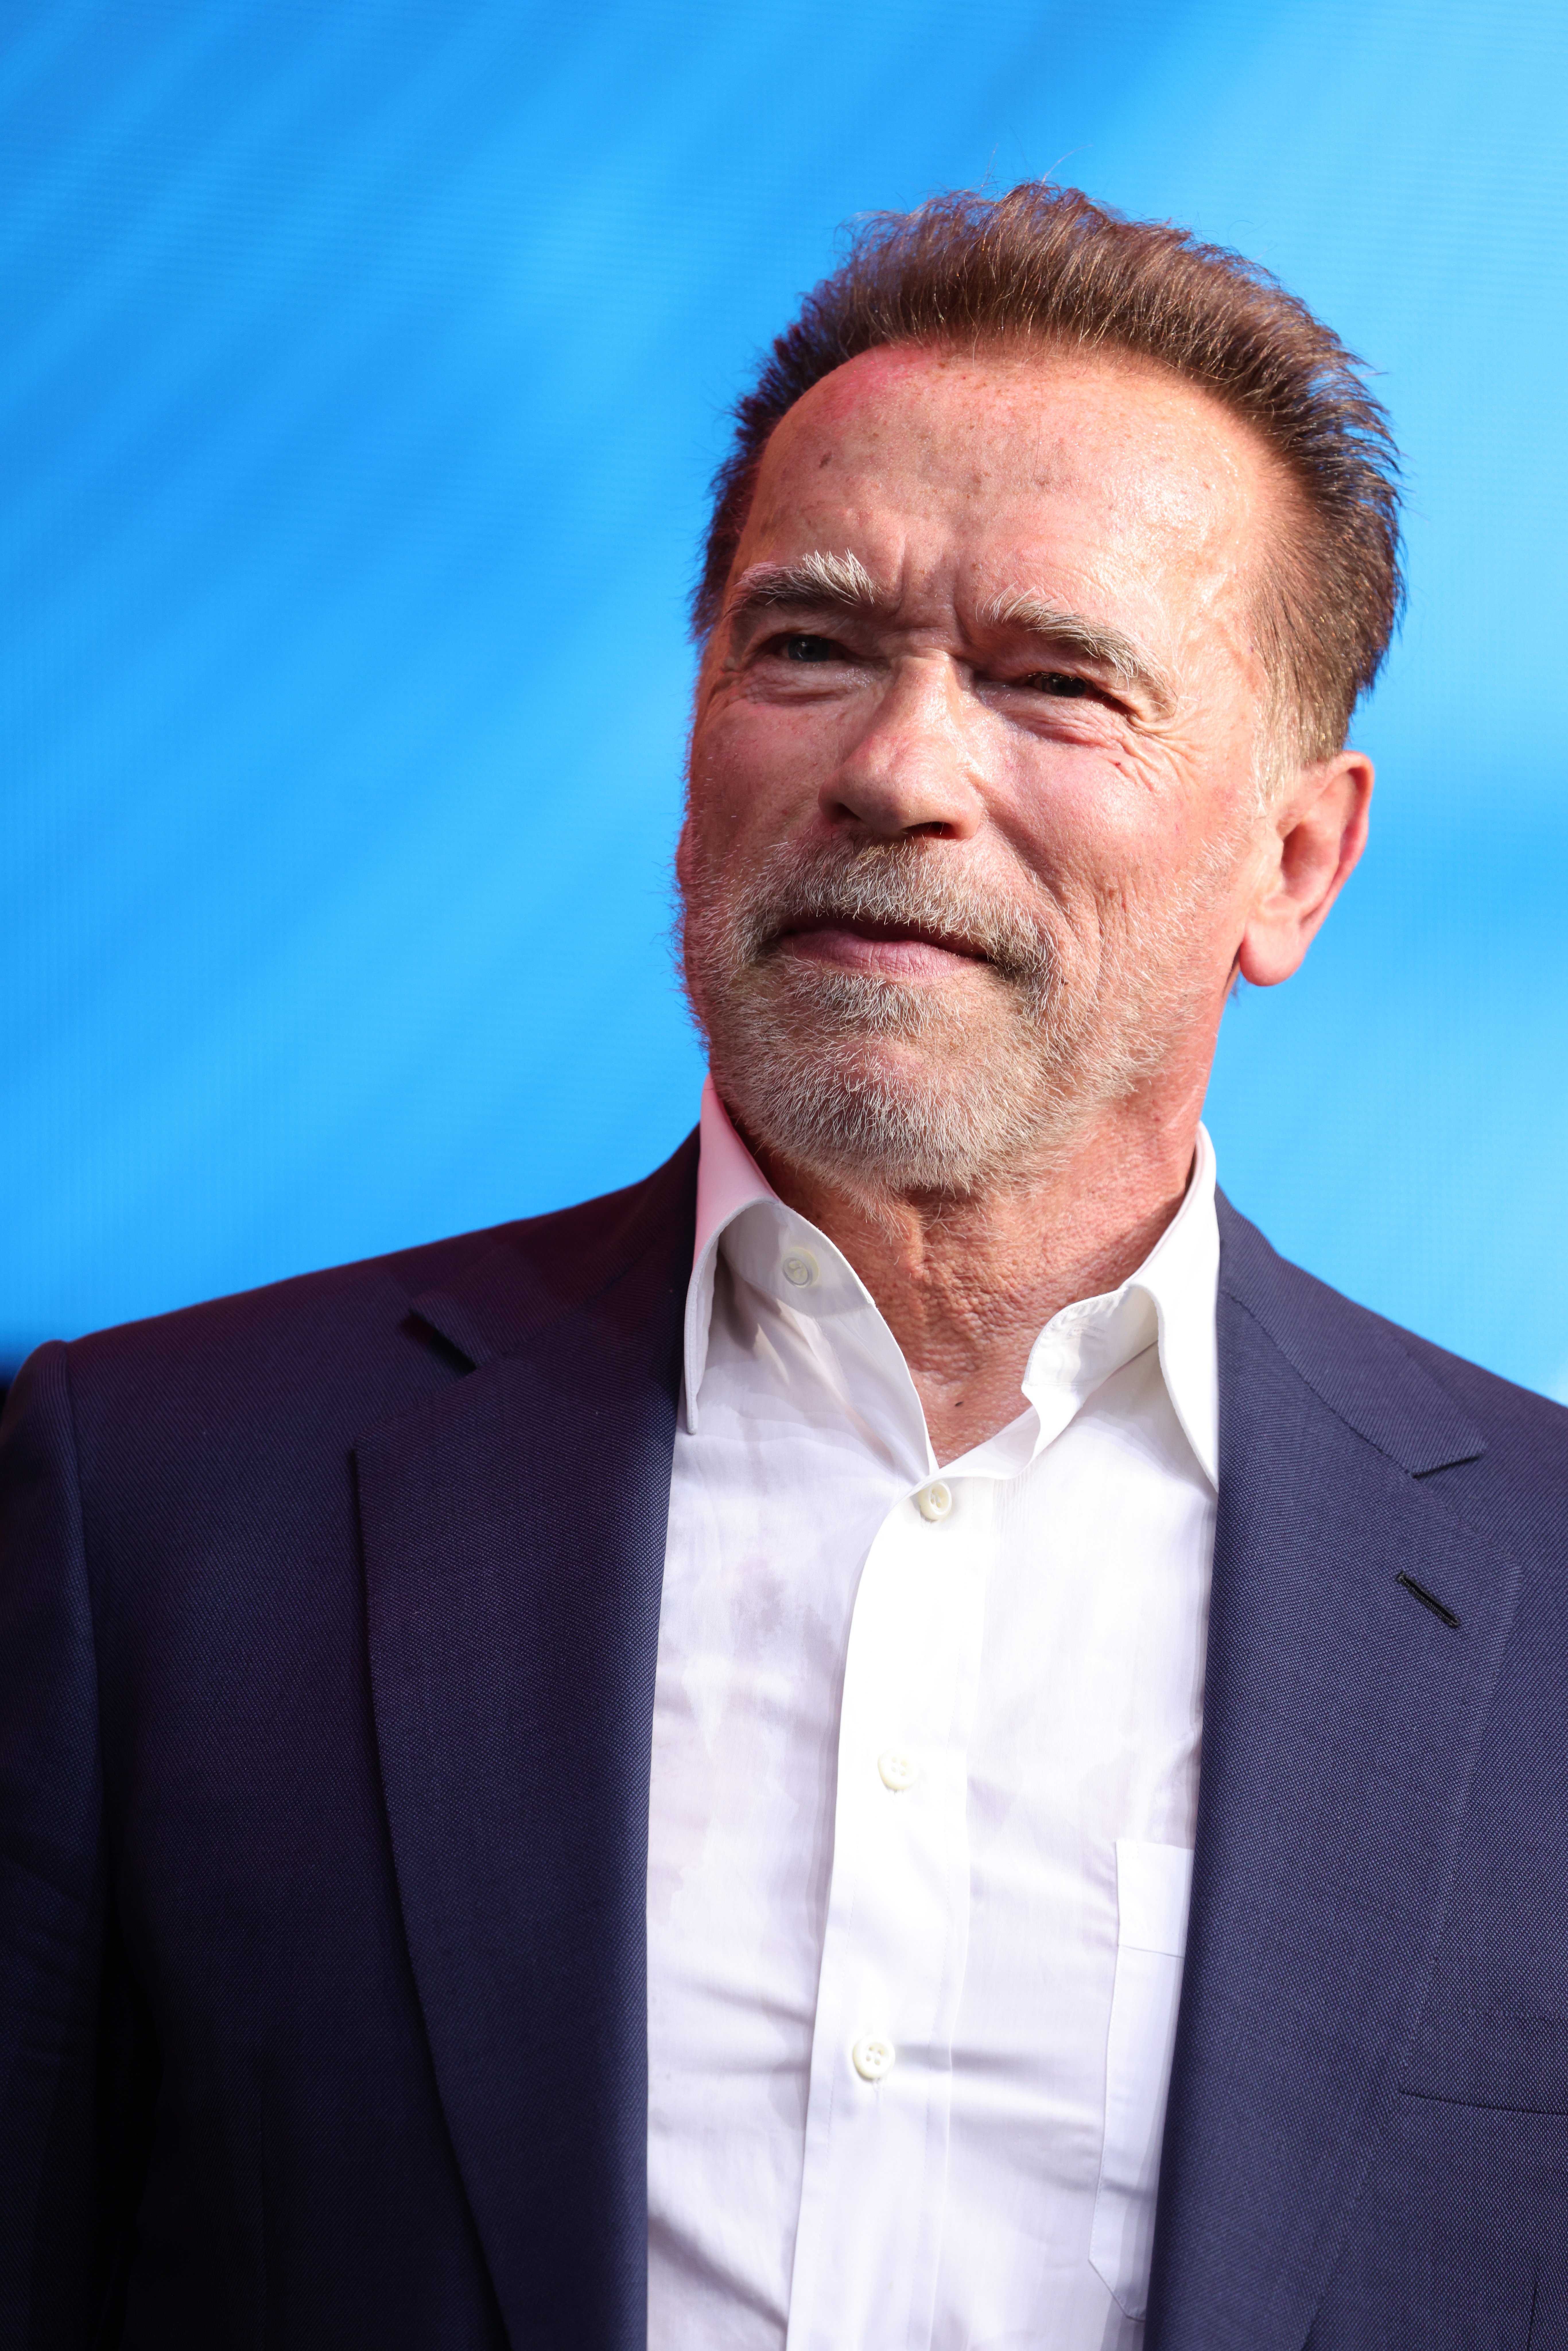 Arnold Schwarzenegger während der Digital X-Veranstaltung am 7. September 2021 in Köln, Deutschland | Quelle: Getty Images